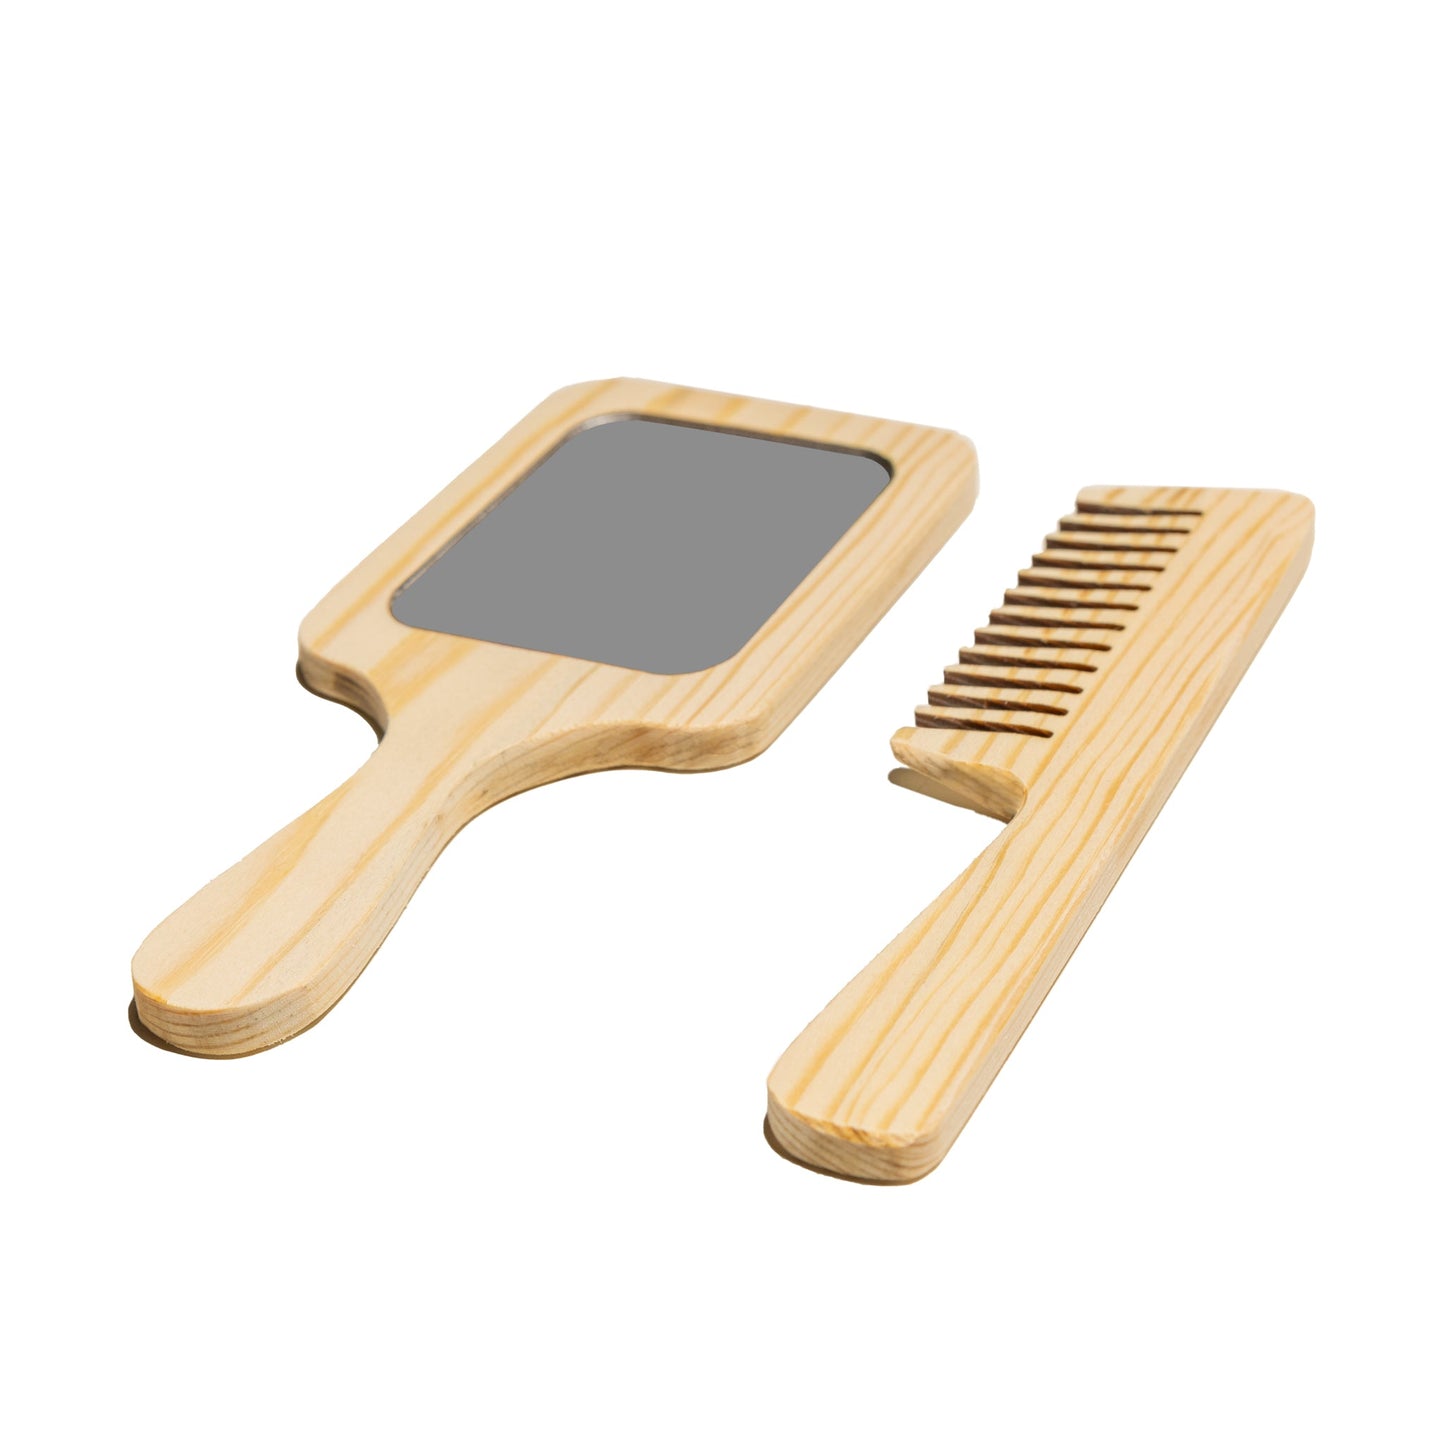 Montessori mirror and comb 